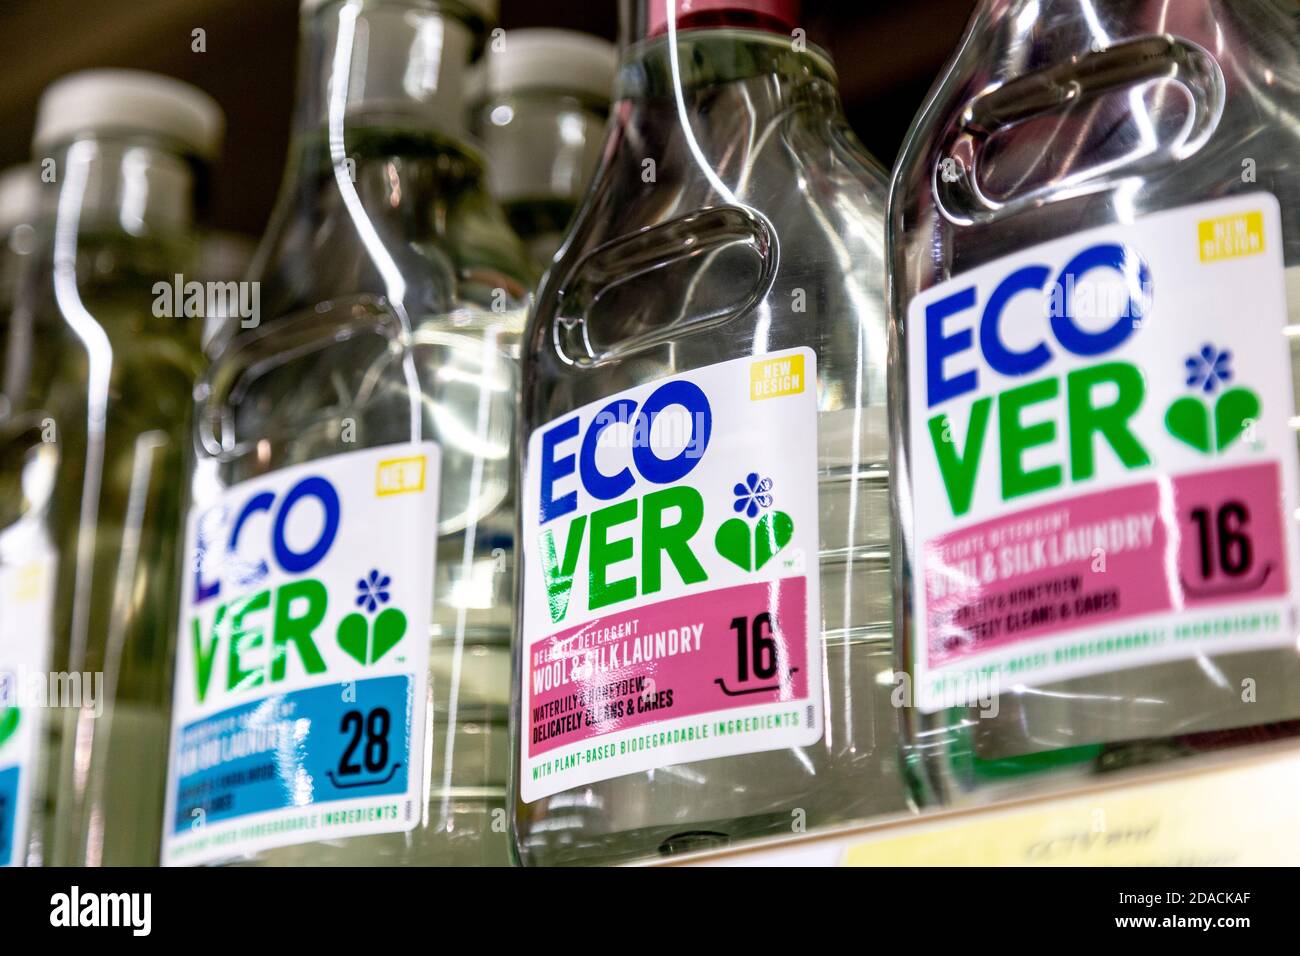 Primer plano de detergente ecológico para ropa Encover en la estantería del supermercado, Londres, Reino Unido Foto de stock